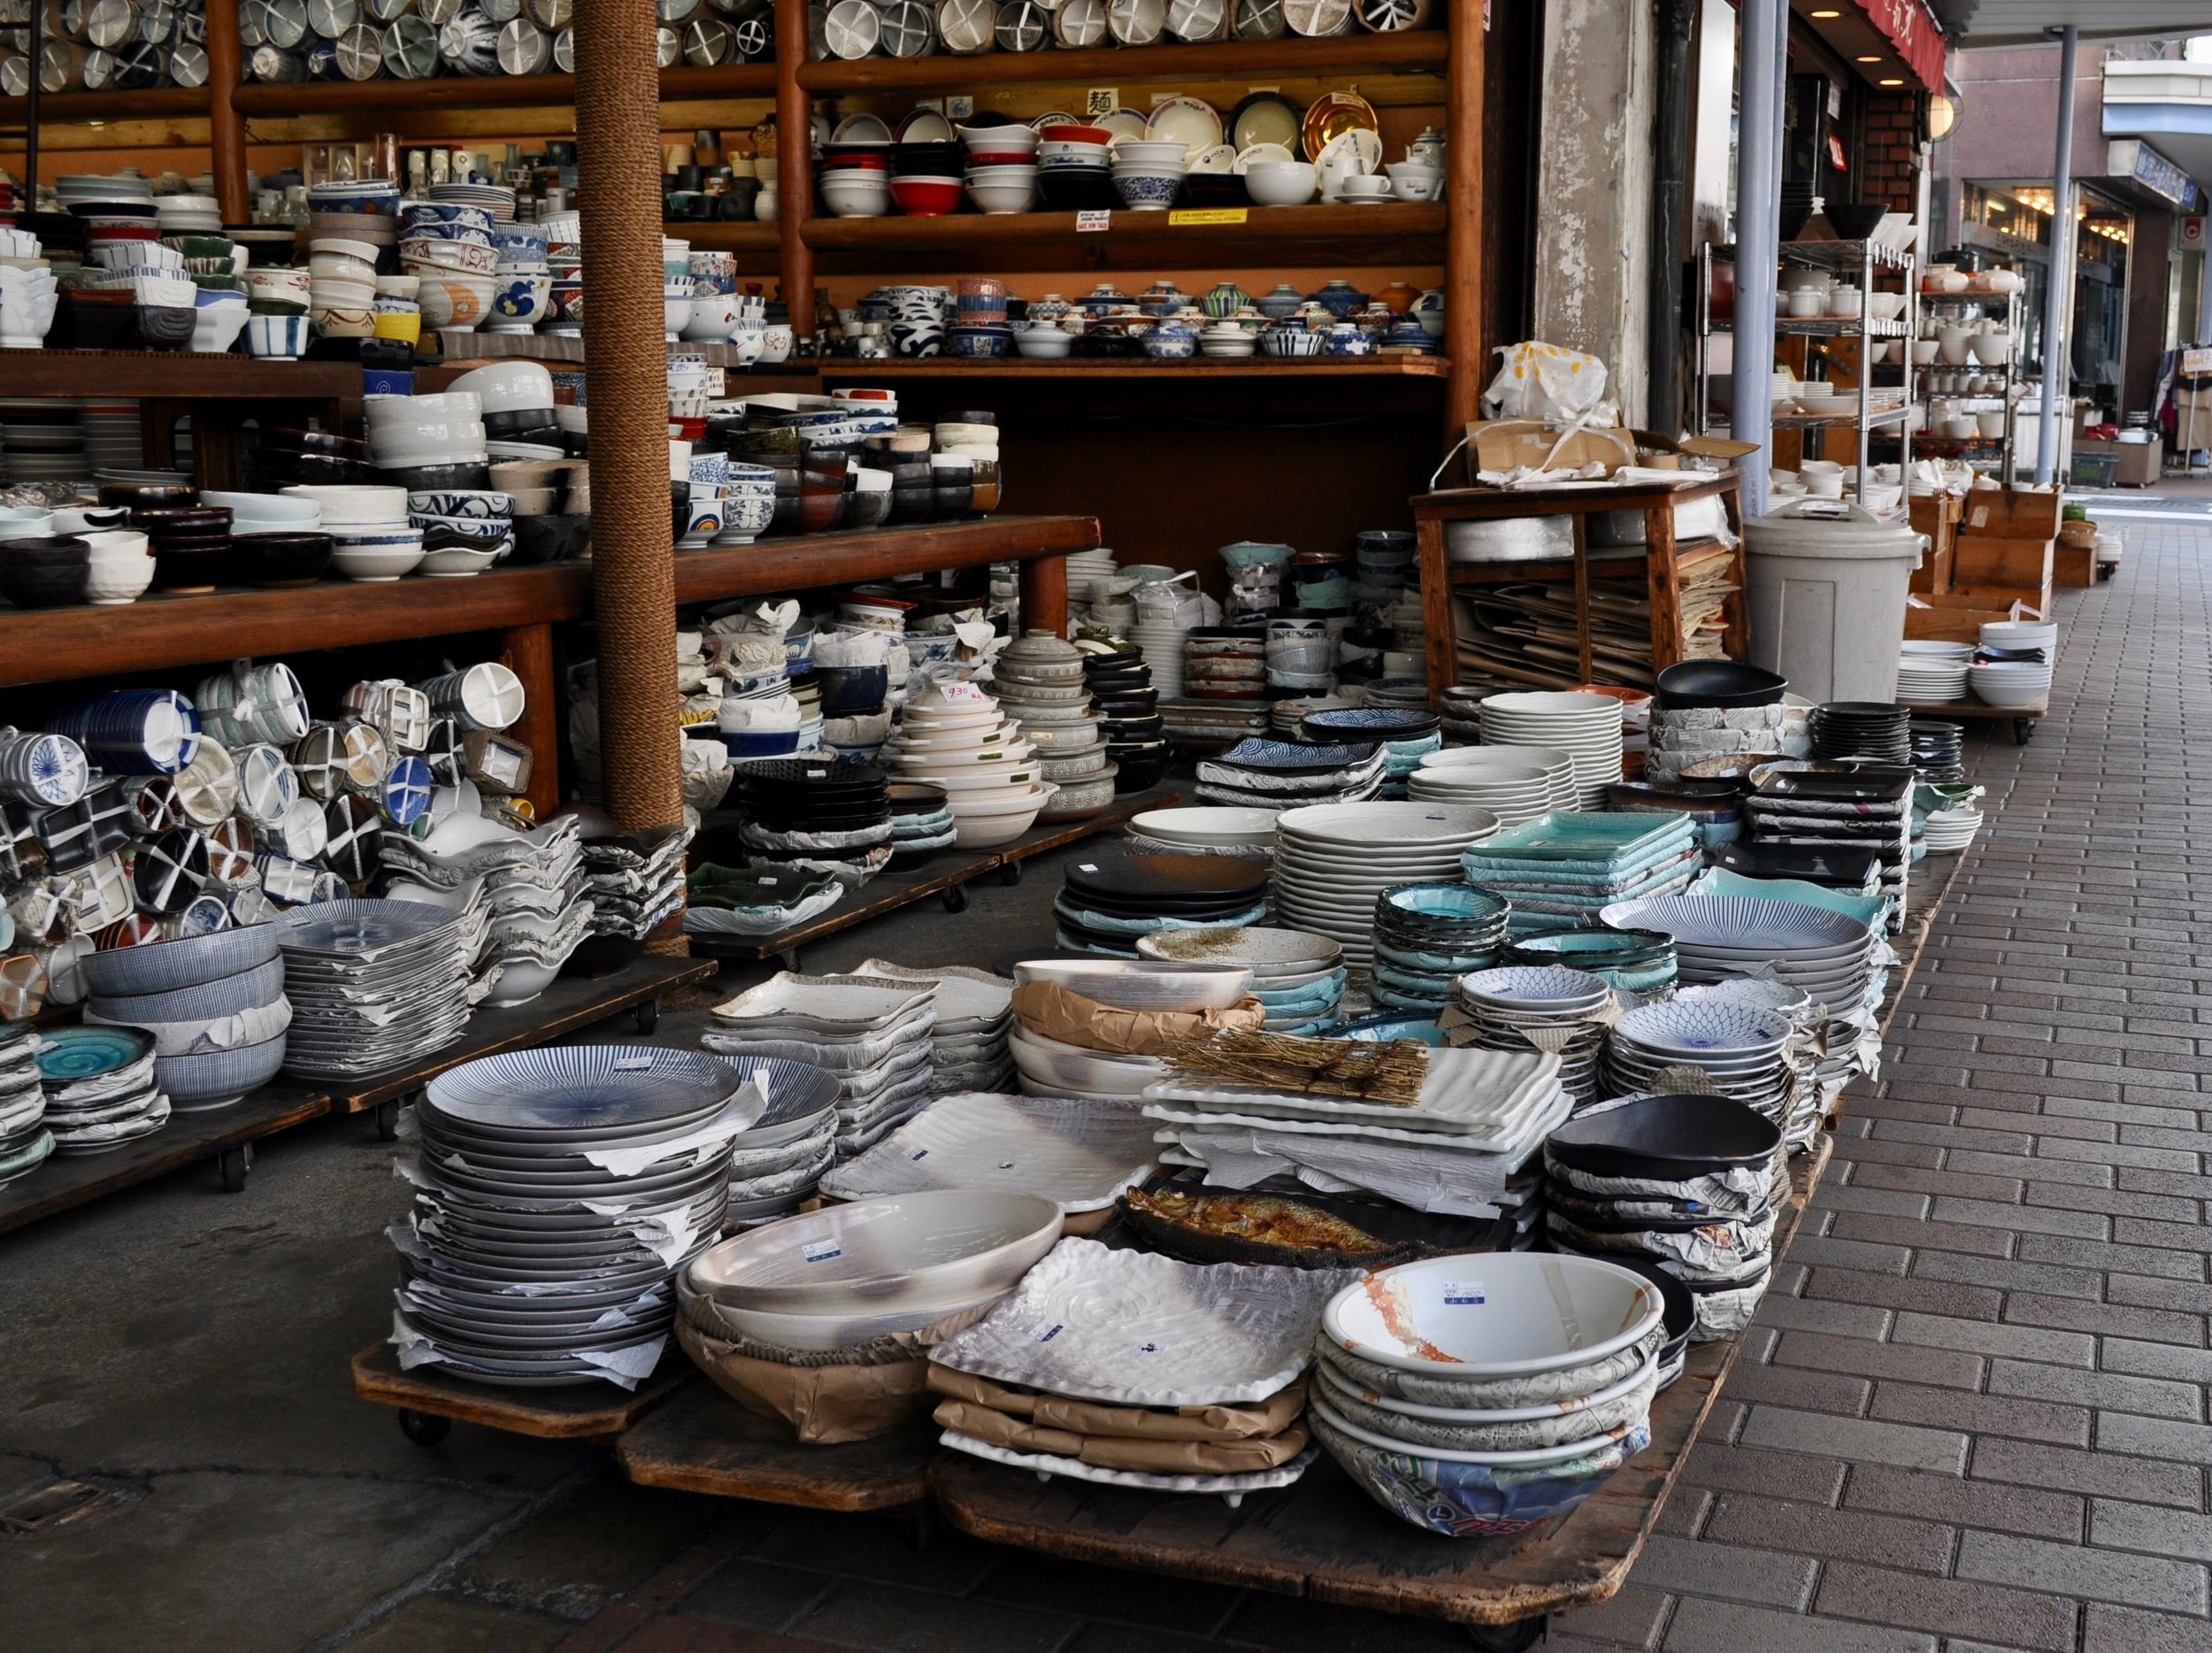 Ceramics upon ceramics